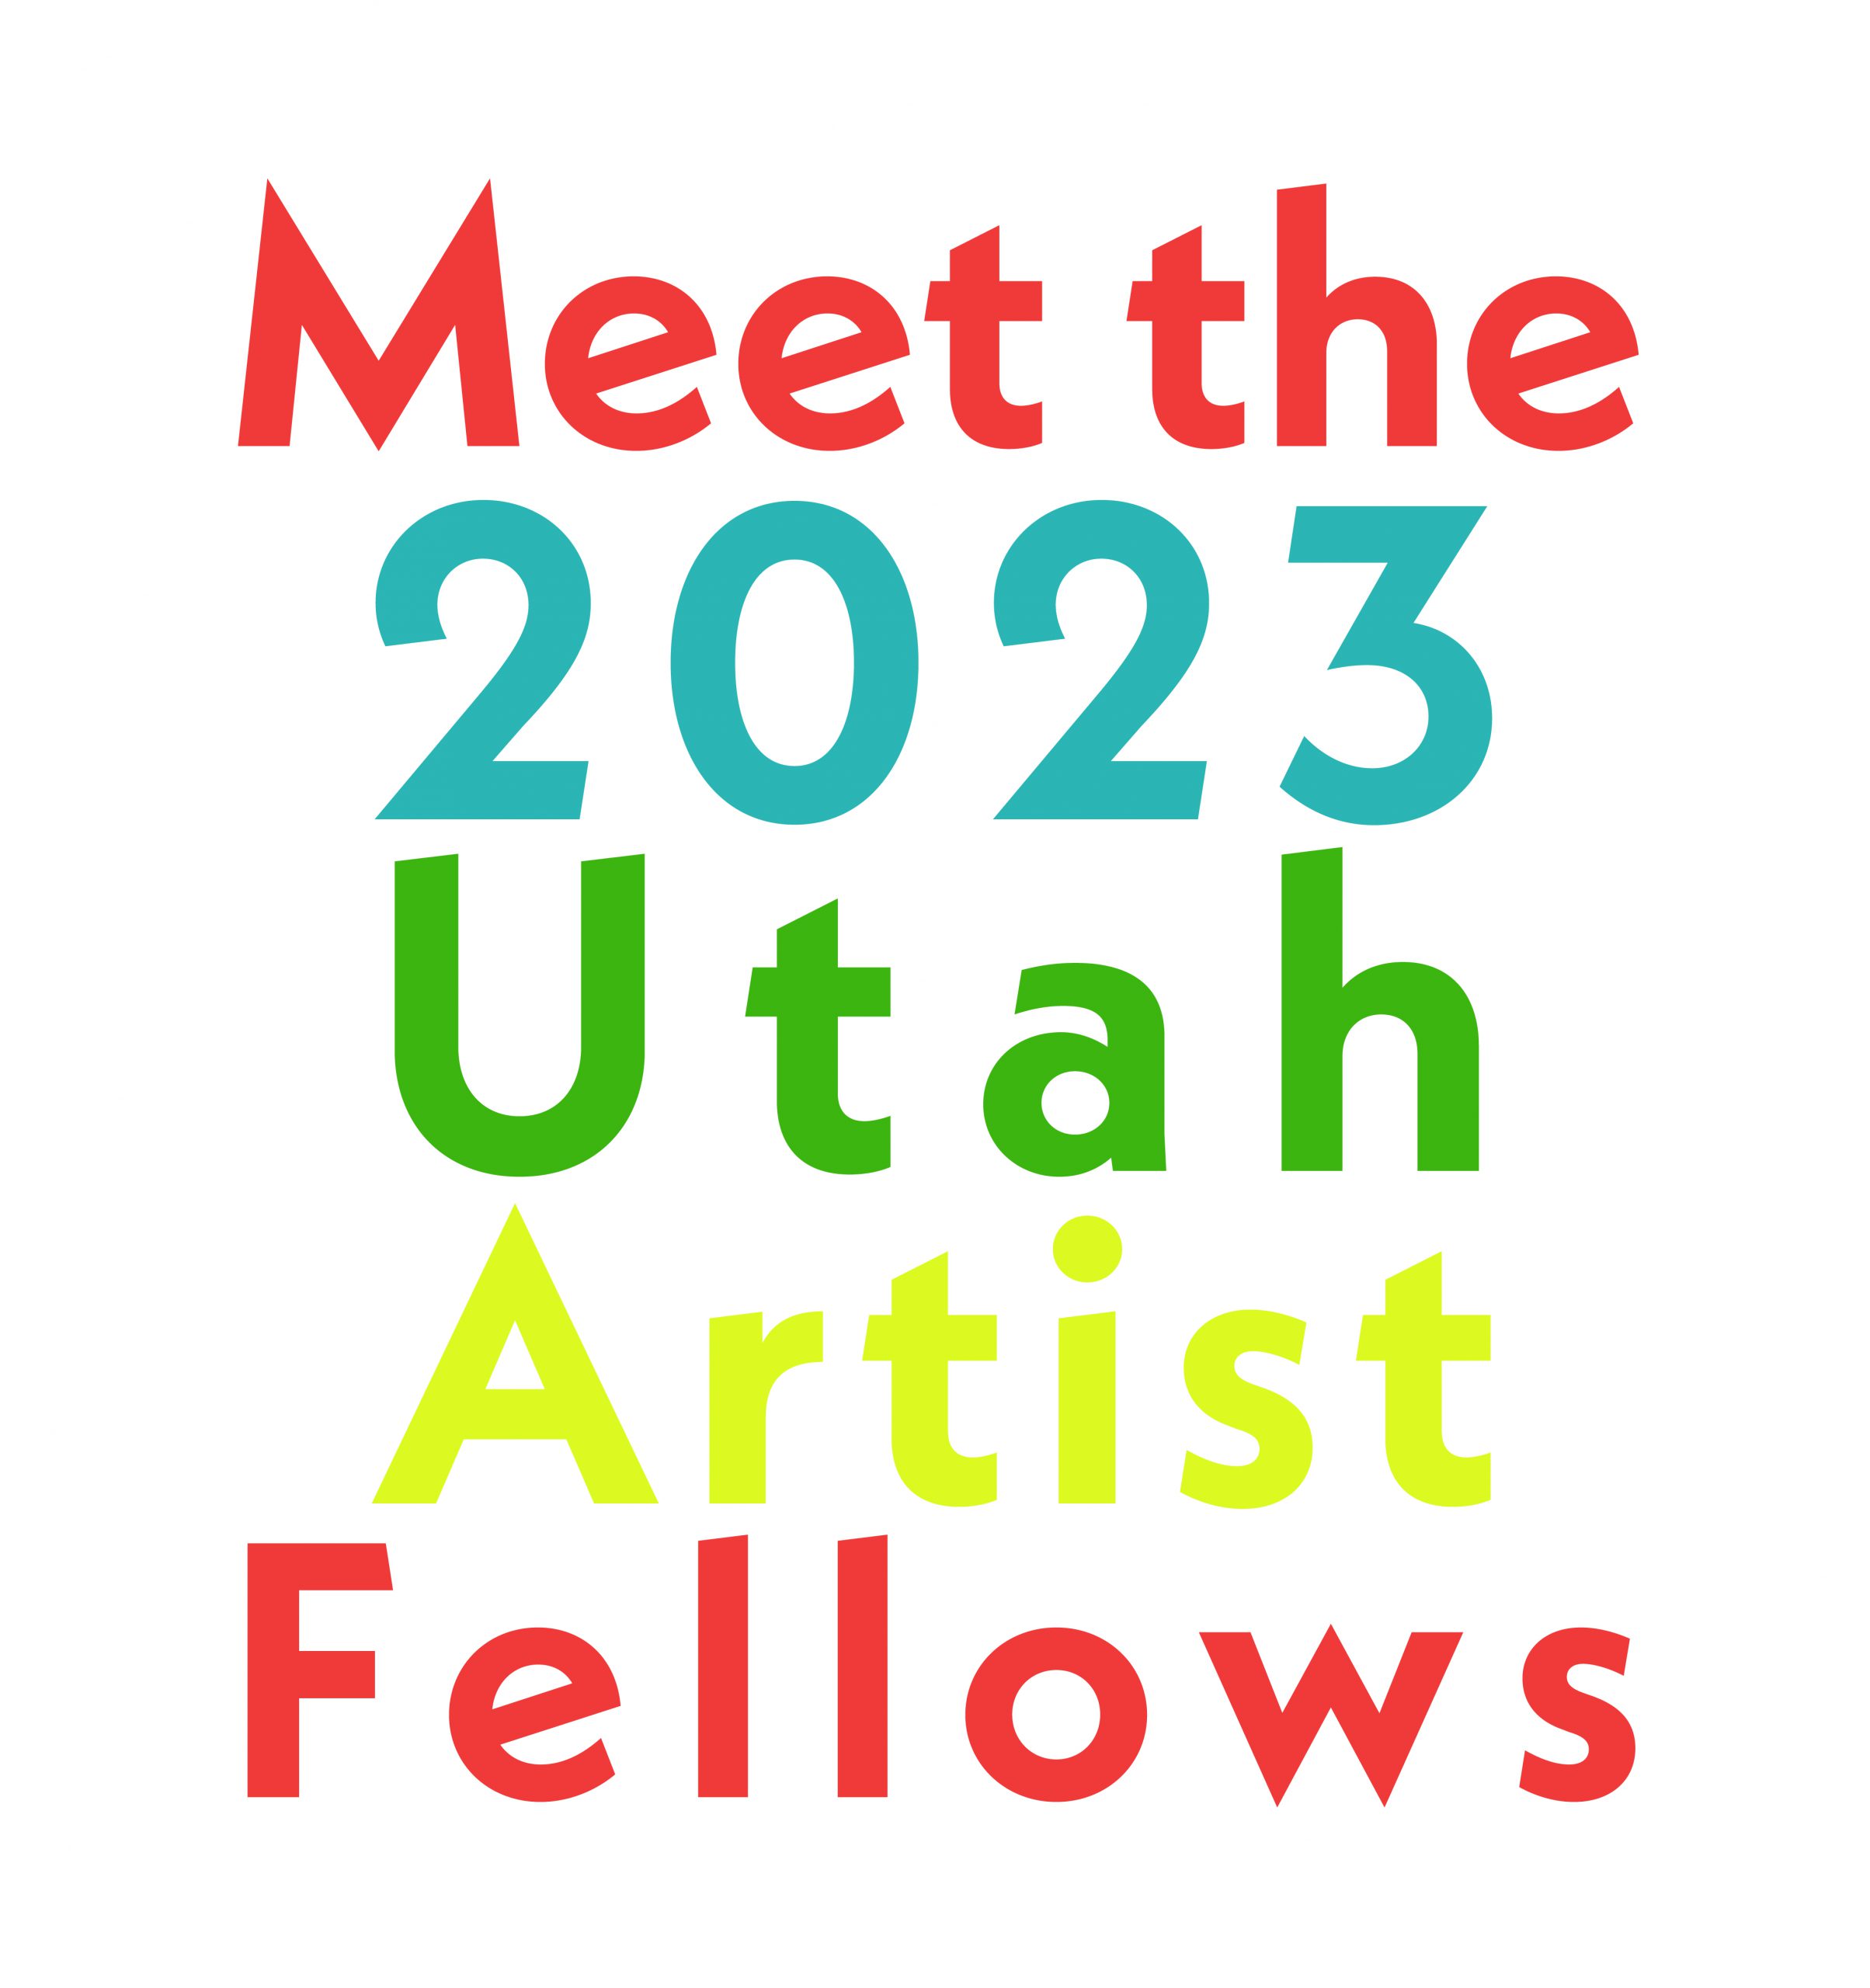 Meet the 2023 Utah Artist Fellows.